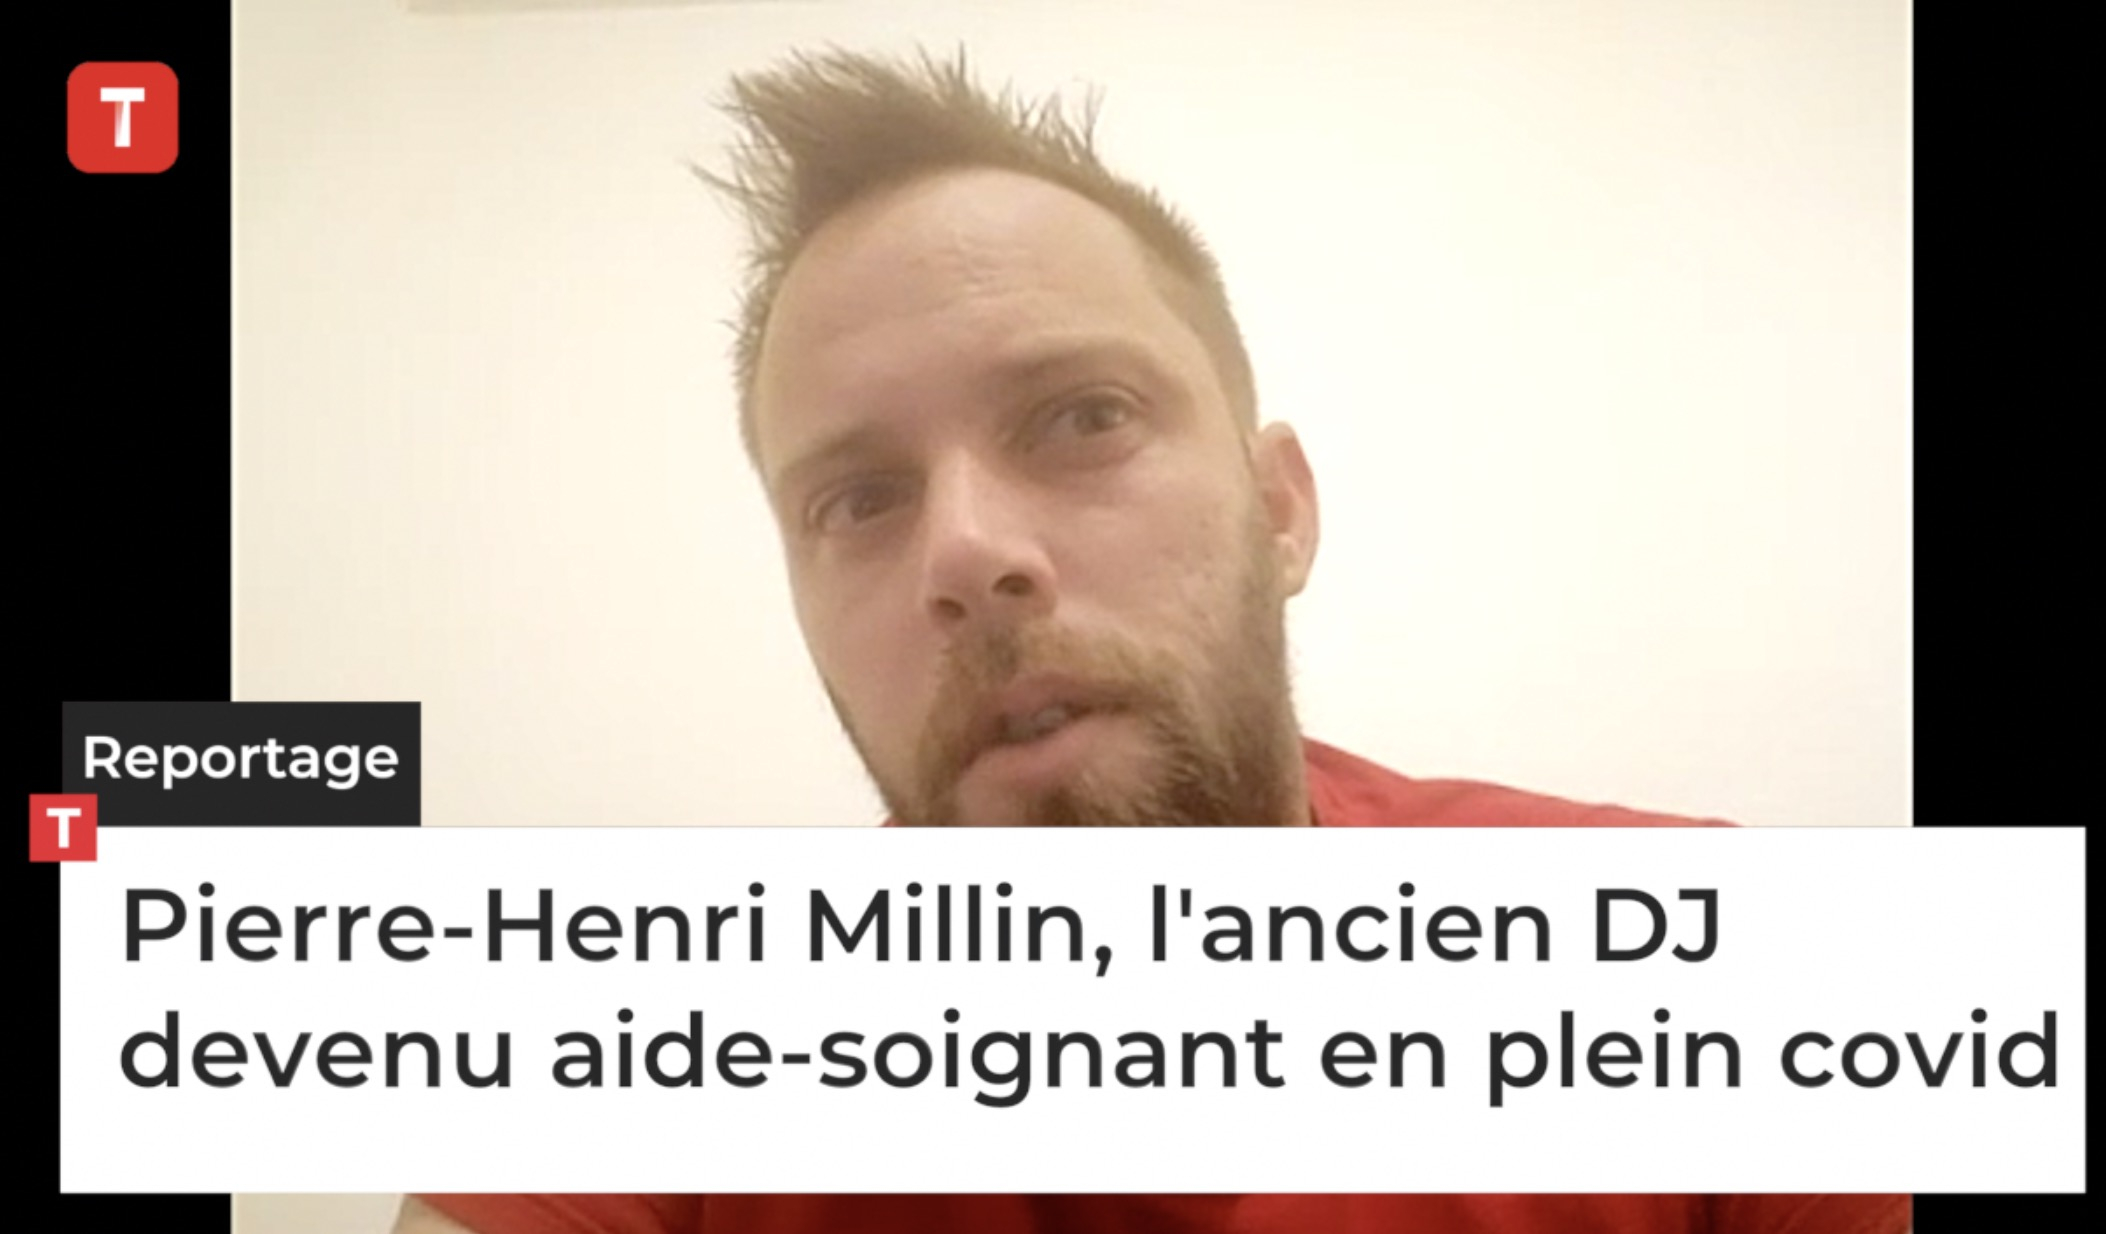 Pierre-Henri Millin, l'ancien DJ devenu aide-soignant en plein covid (Le Télégramme)